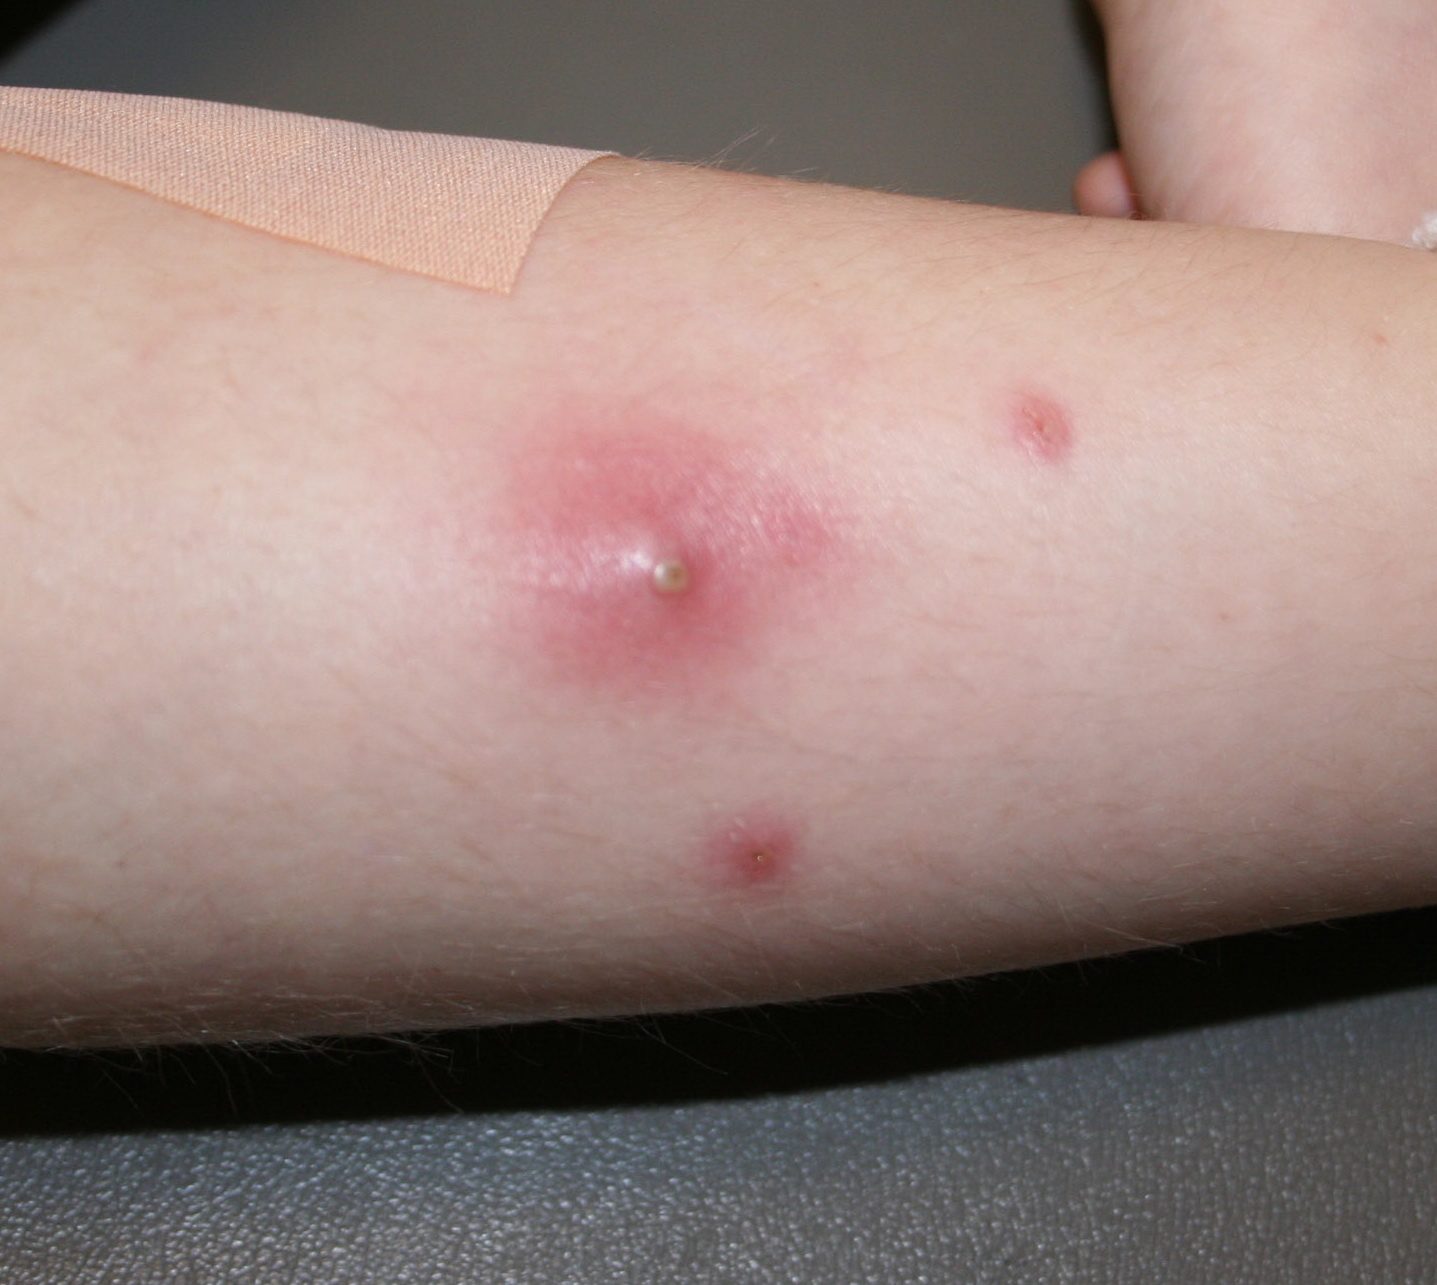  воспаление паховых лимфоузлов при инфекциях кожи